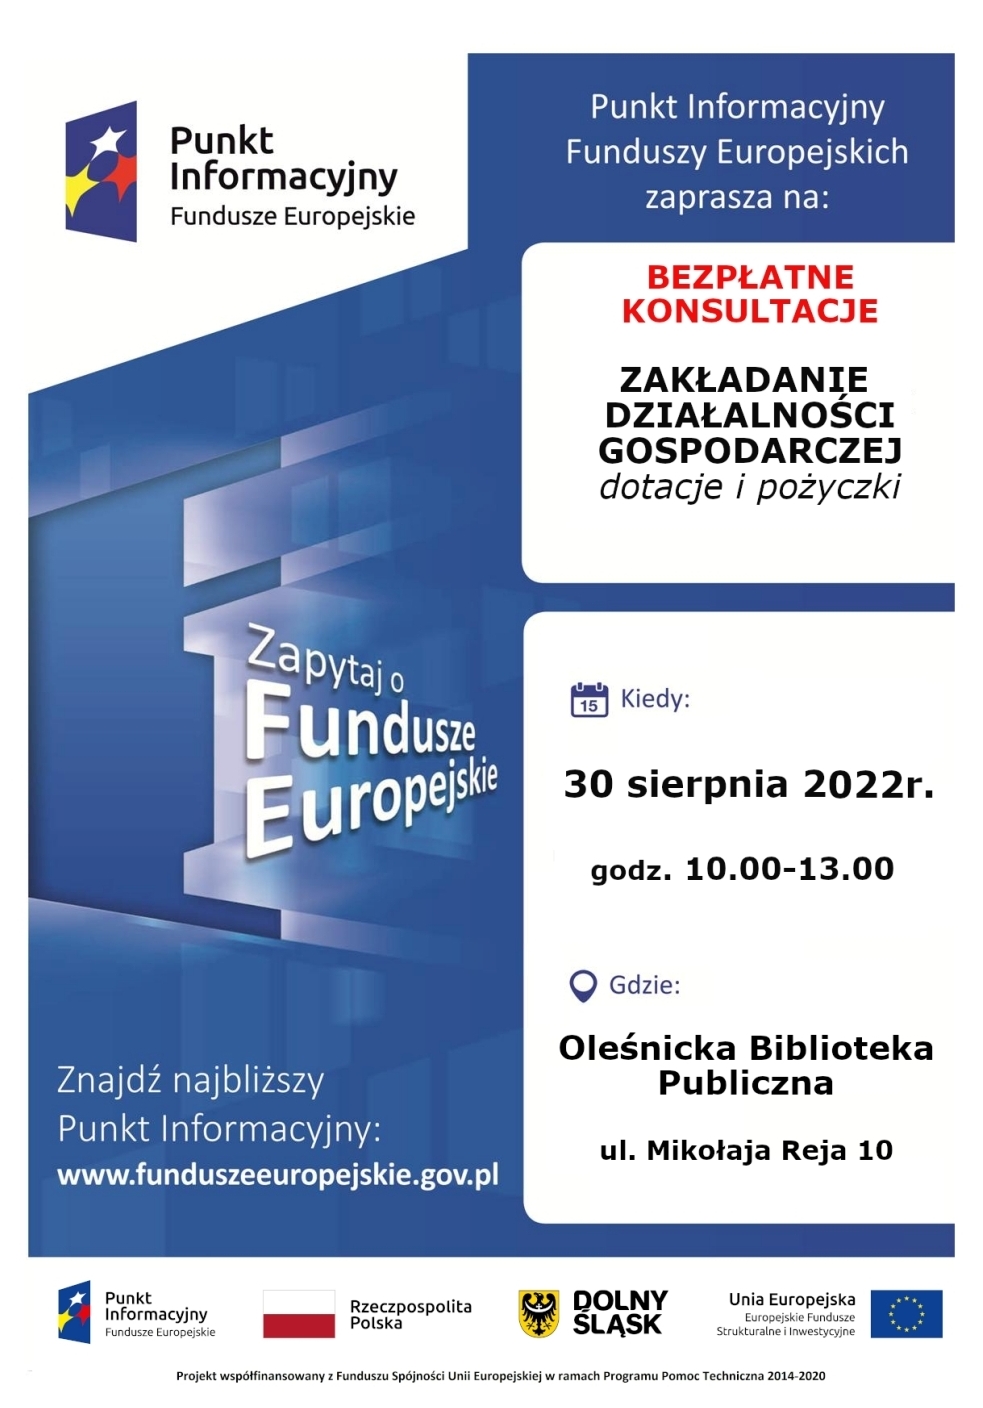 Plakat promujący bezpłatne konsultacje Punktu Informacyjnego Funduszy Europejskich